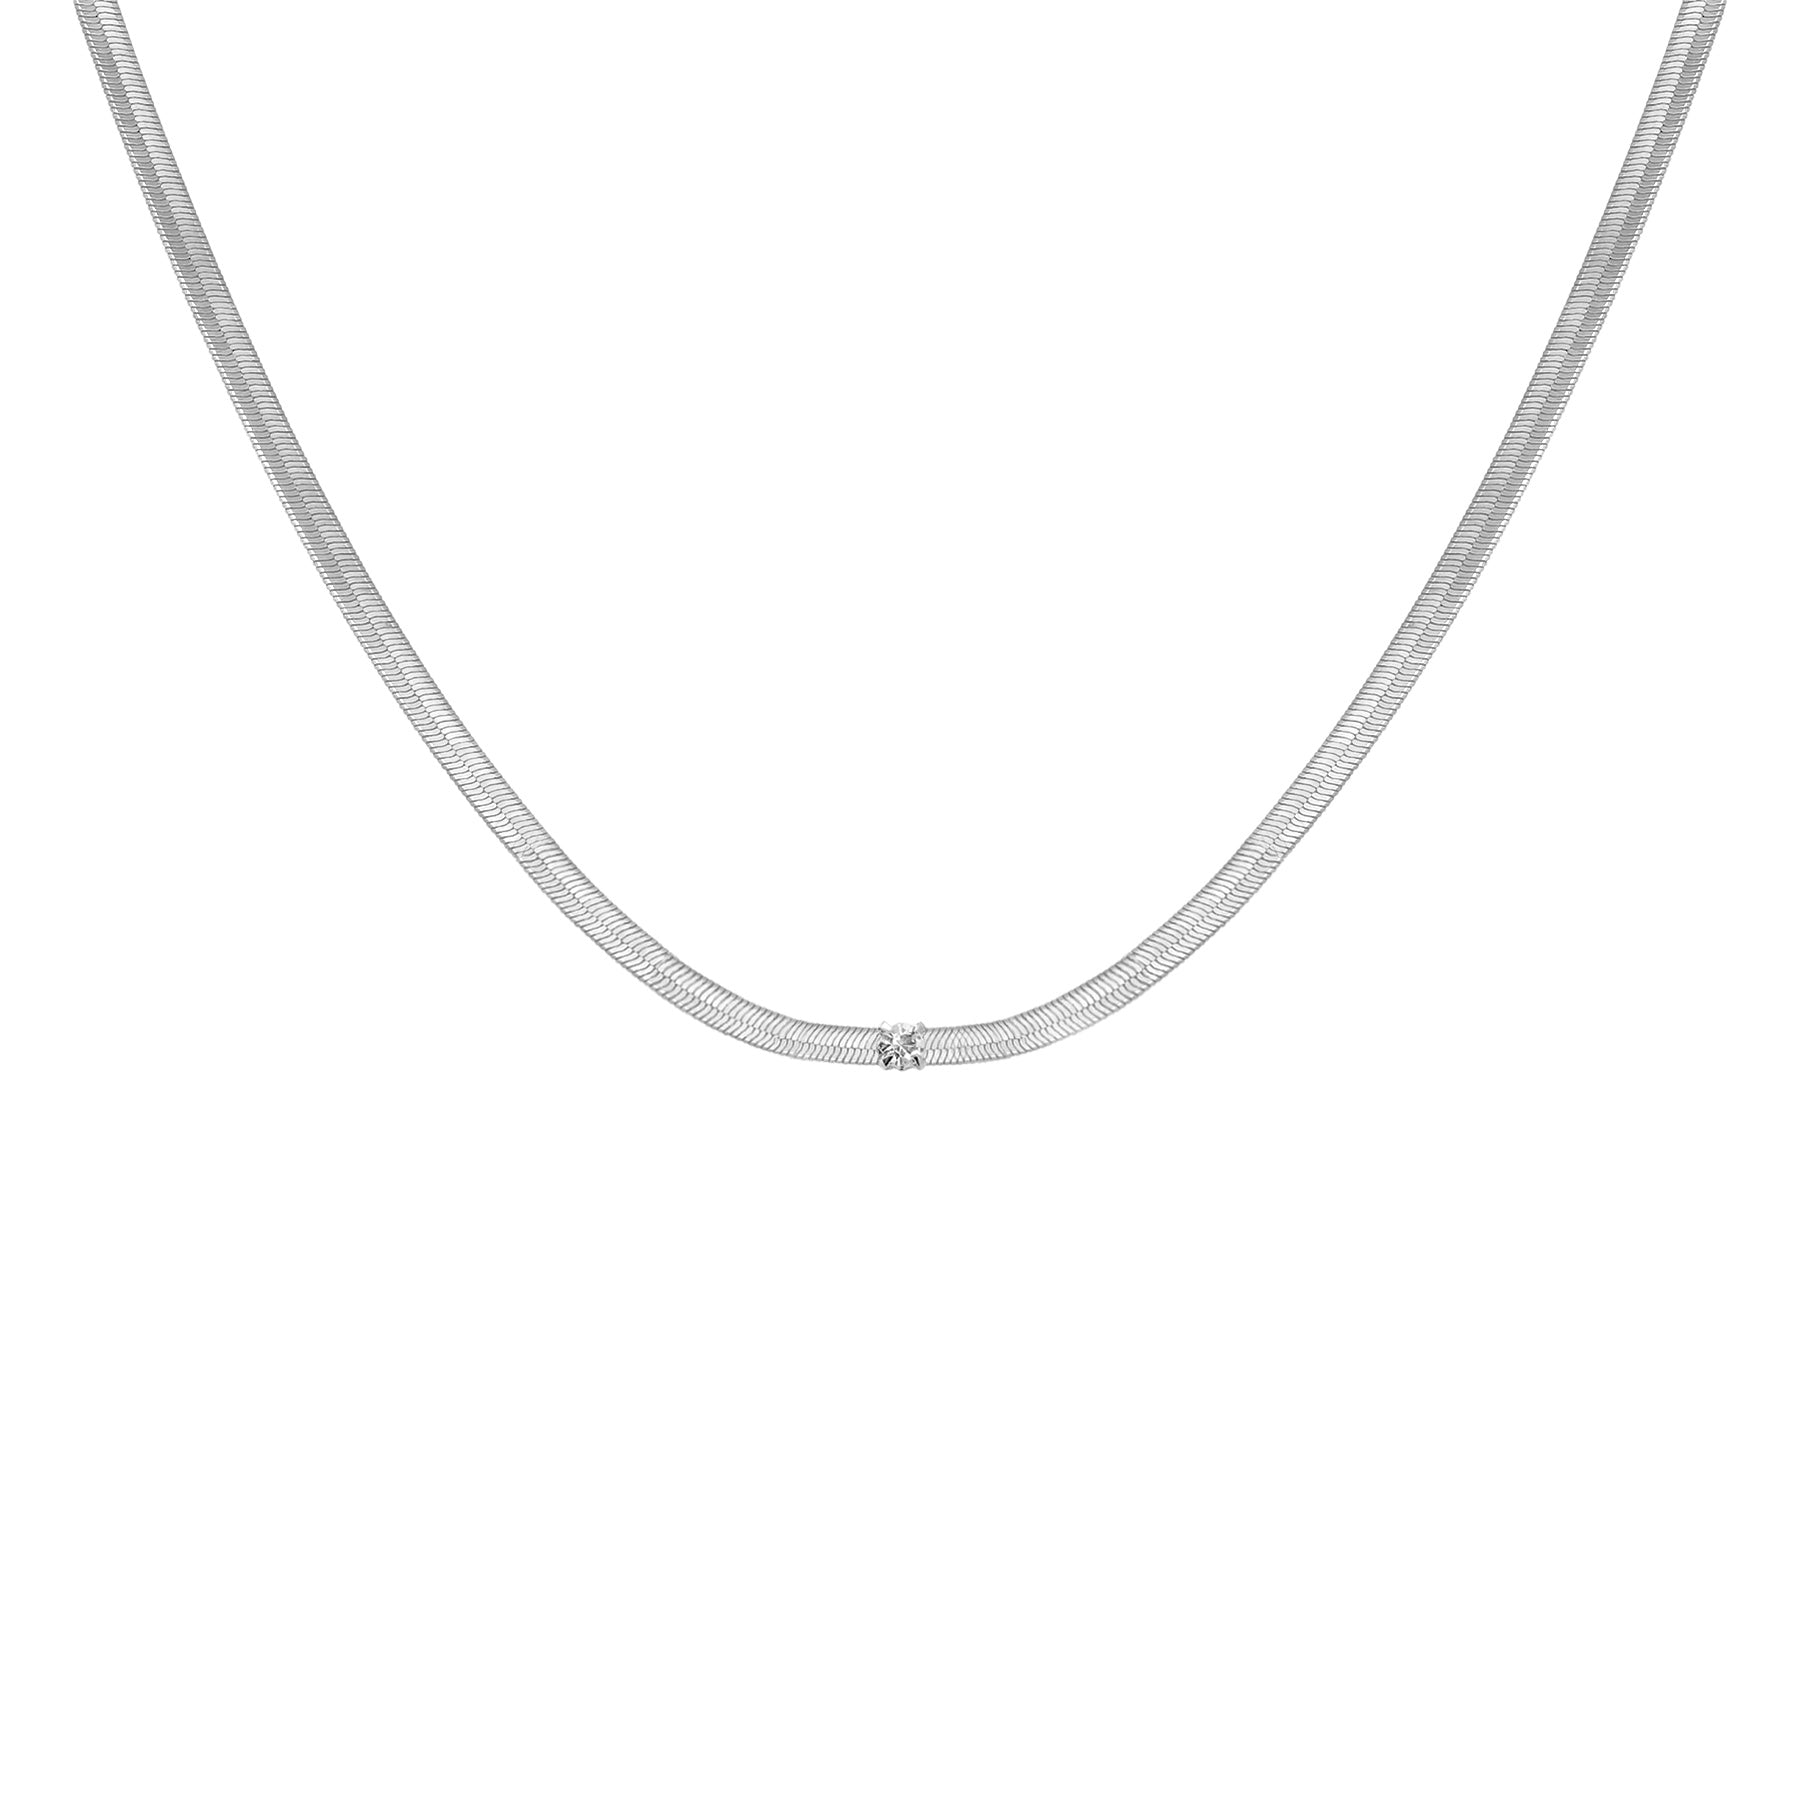 Silver zircon serpentine chain necklace